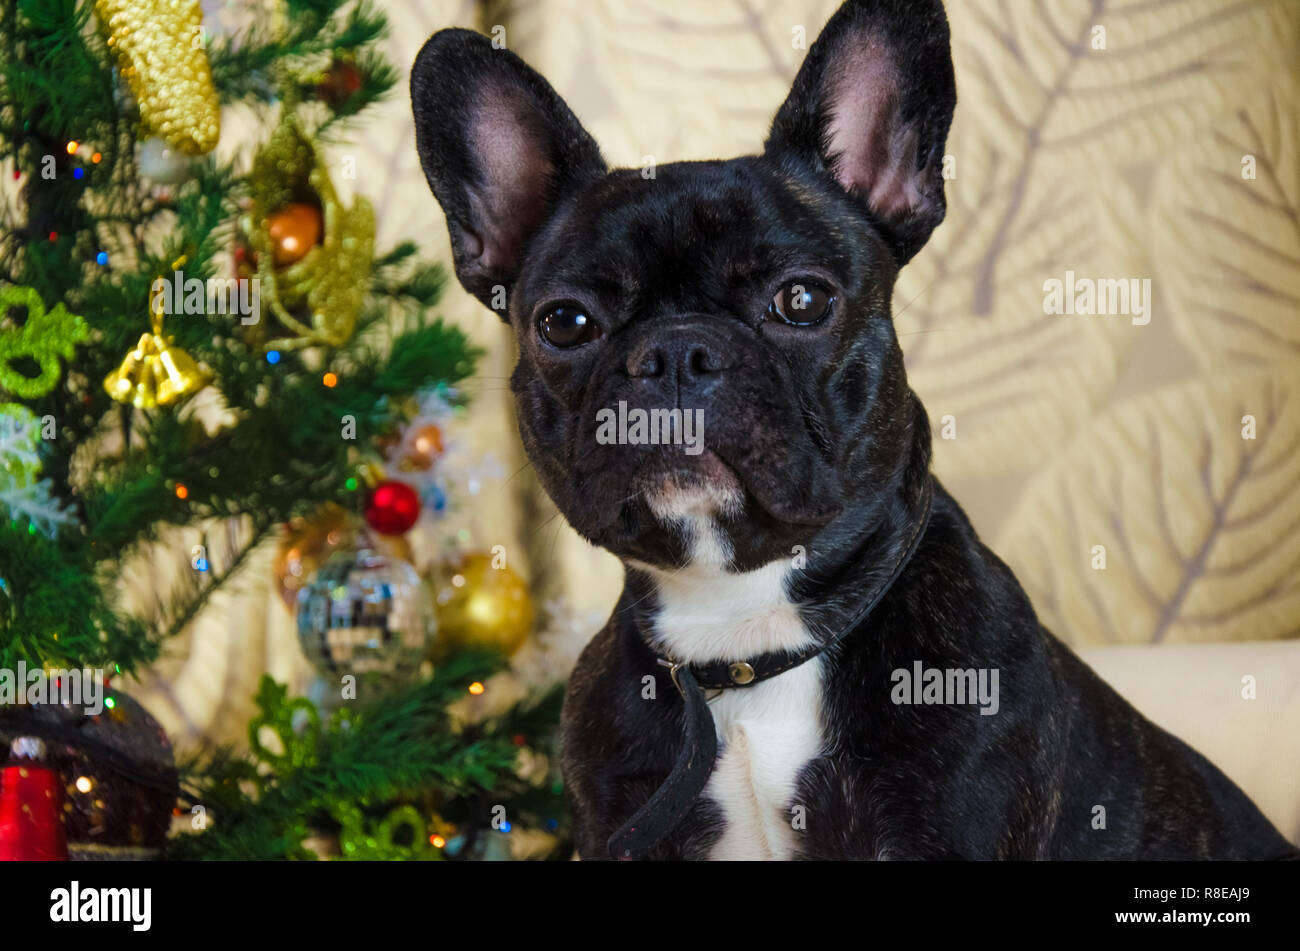 Portrait de chien face à la nouvelle année vacances. animal est noir, jeune bouledogue français. prix chien jeter près de l'arbre de Noël. contexte est traditionnelle maison de vacances. joyeux réveillon de fête Banque D'Images